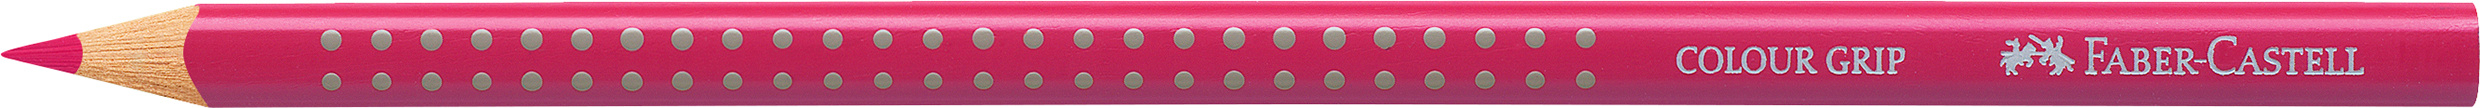 FABER-CASTELL Crayon de couleur Colour Grip 112422 fuchsia fuchsia